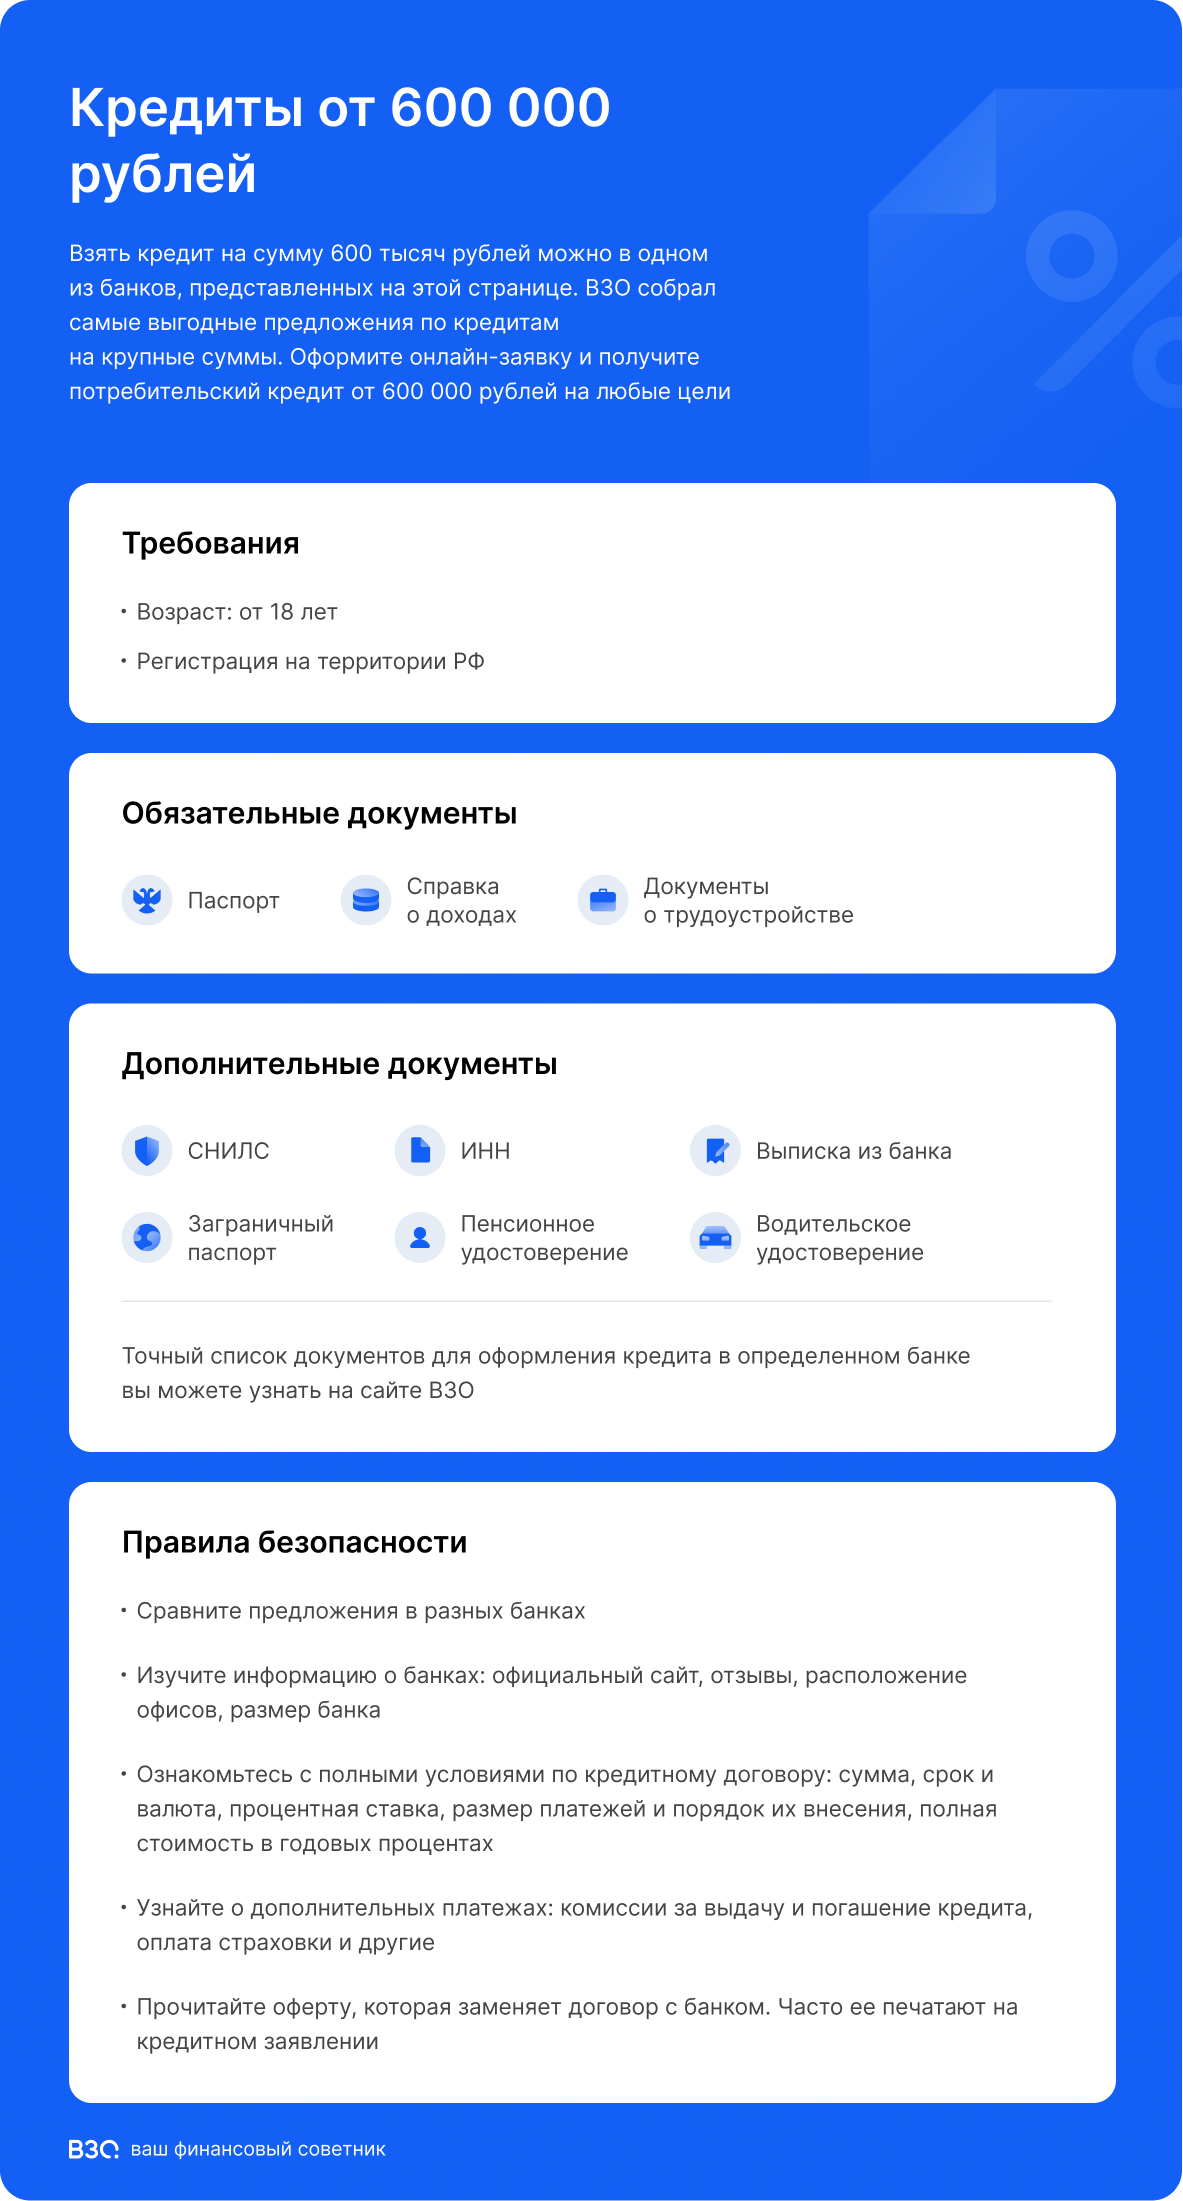 Кредиты от 600 000 рублей инфографика